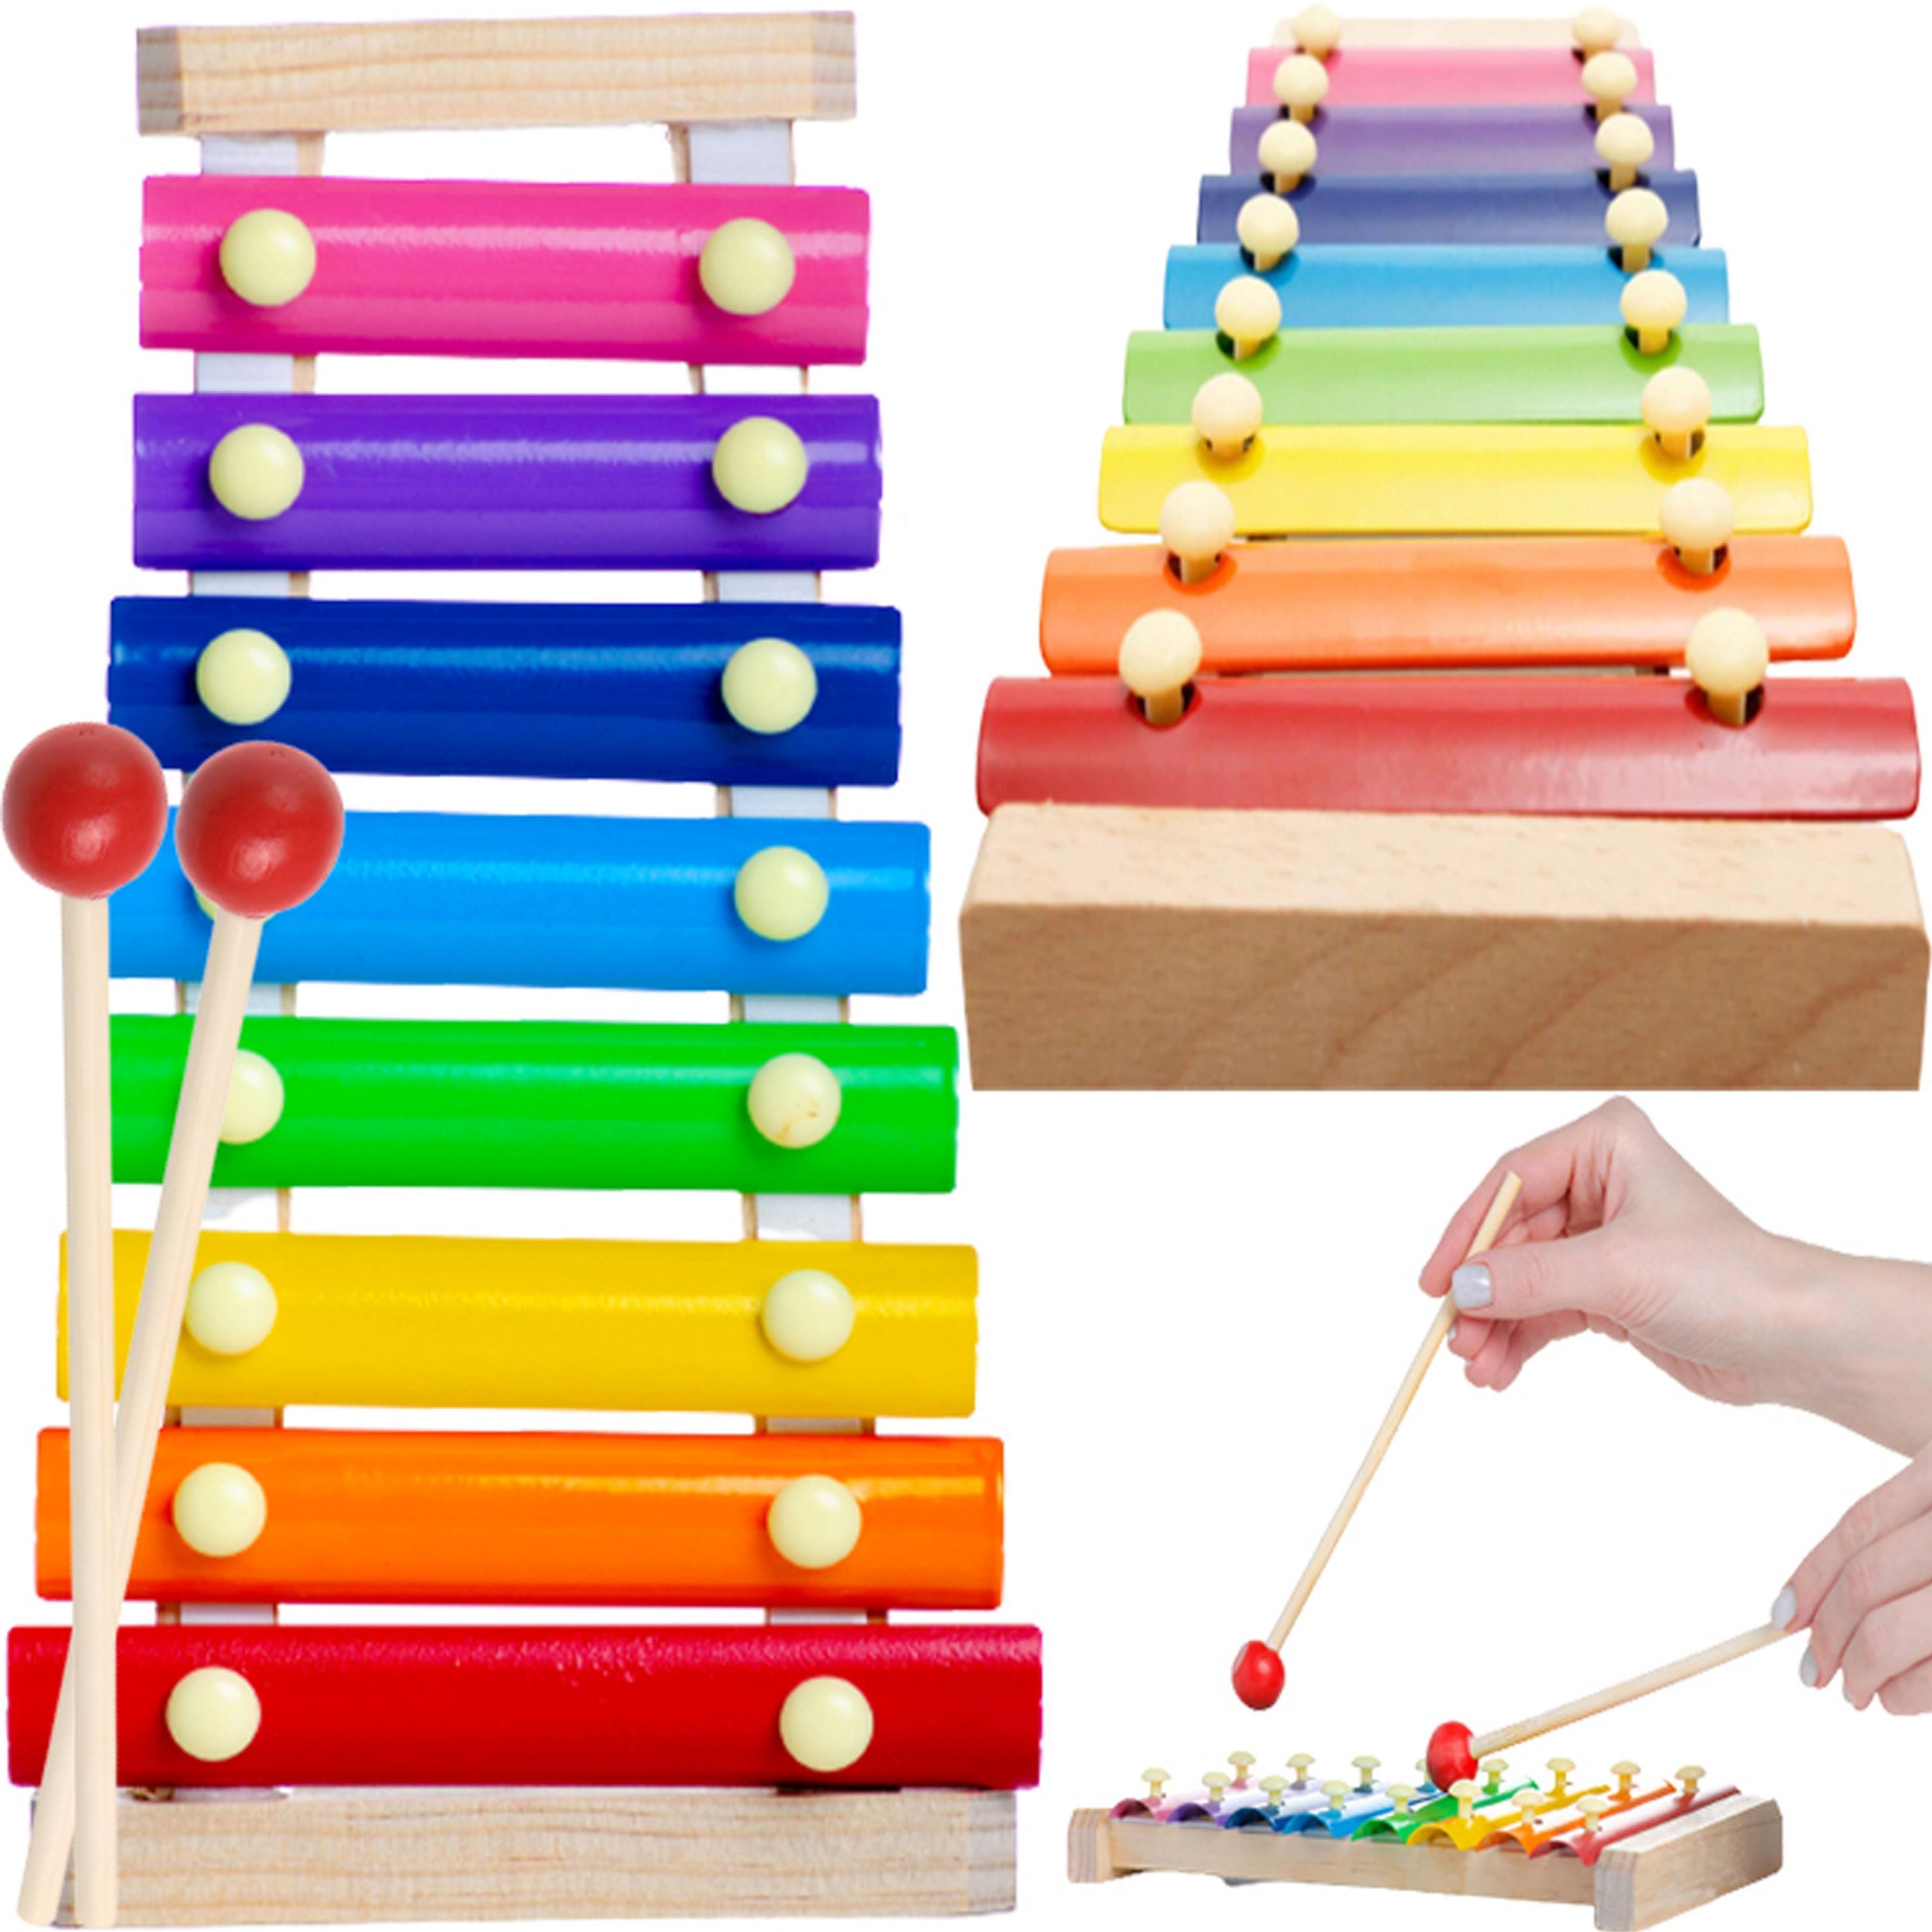 Retoo Spielzeug-Musikinstrument Xylophon aus Holz Glockenspiel für Kinder Klangspiel Musikinstrument, (Set, 8-Tonzimbel im Holzgehäuse zwei Holzschlägeln)